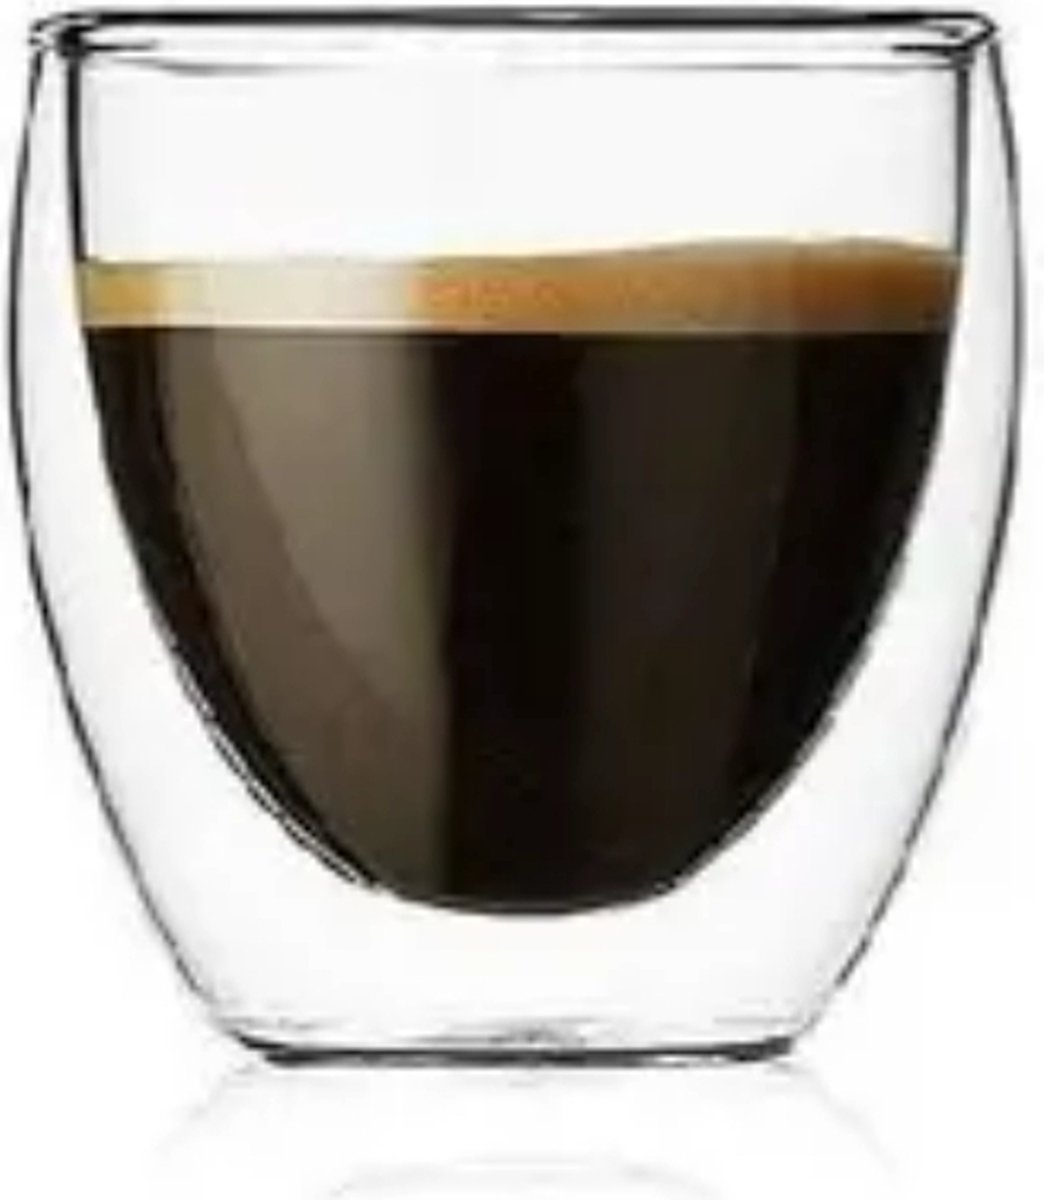 Dubbelwandige borosilicaat glazen - 6 stuks - 250 ml - Koffieglazen - Theeglas - Cappuccino glazen - dubbenwandigglas zonder oor